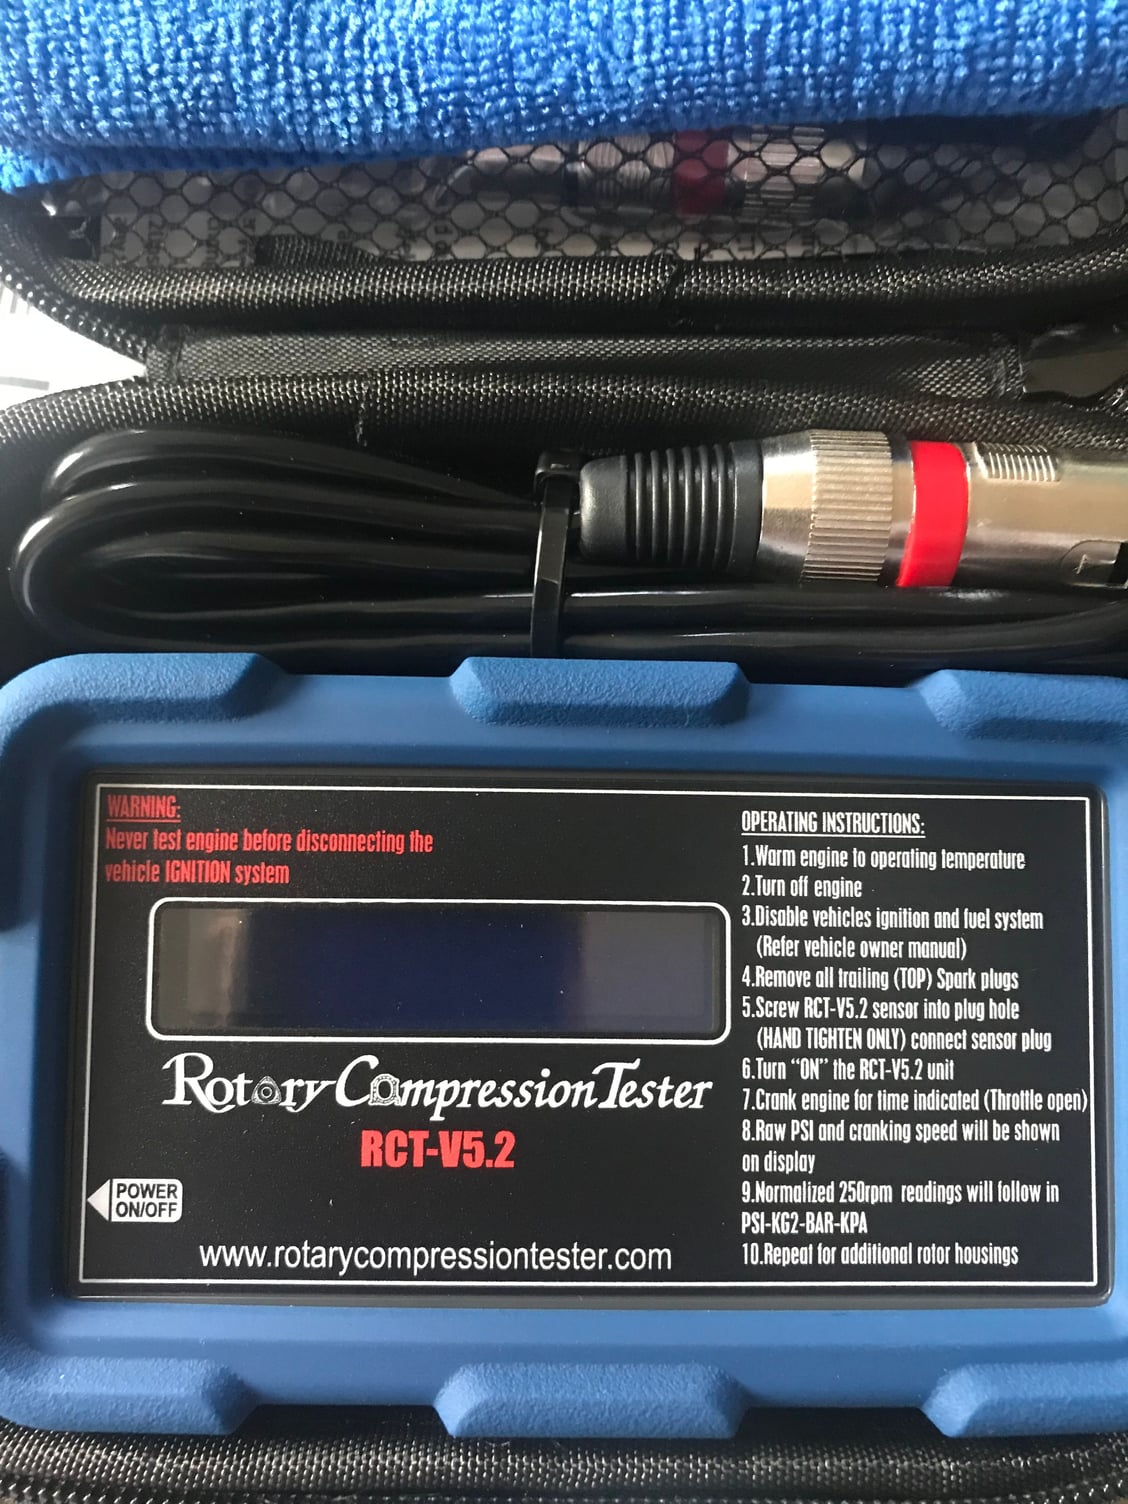 RCTV5.2 Rotary Compression Tester GroupBuy - RX8Club.com